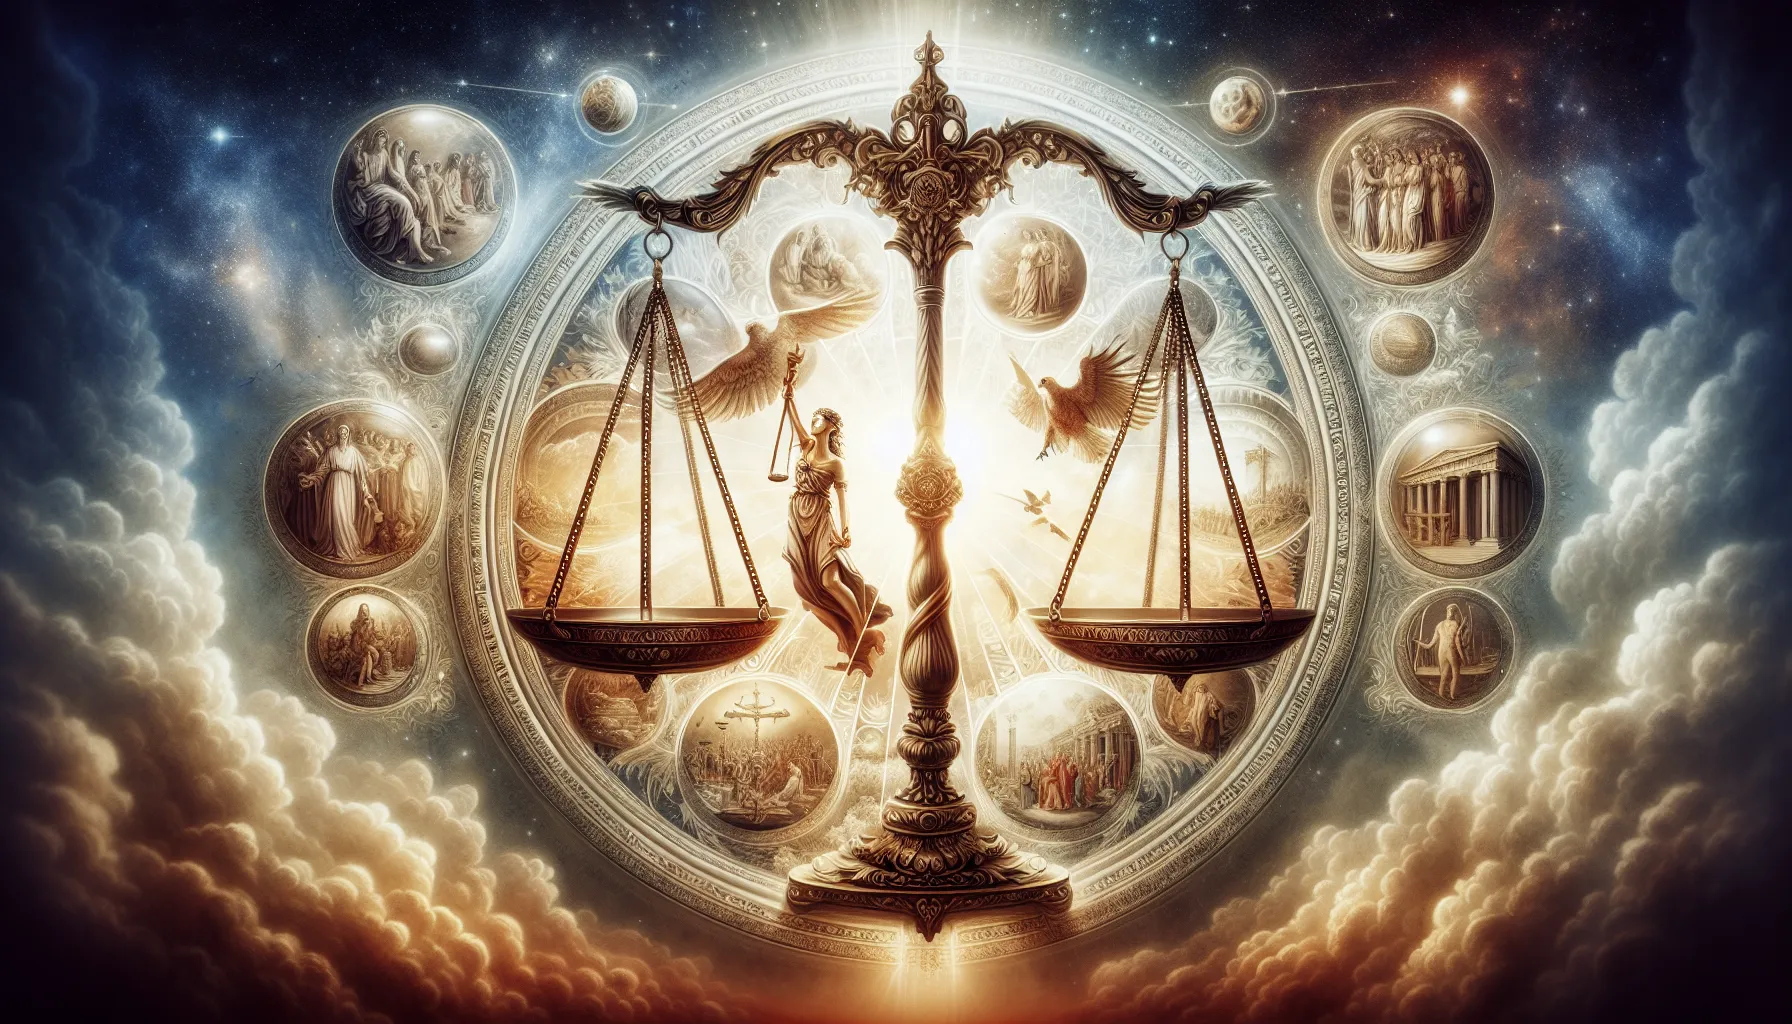 La balanza de la justicia divina en la Biblia: Interpretación y impacto en la humanidad.